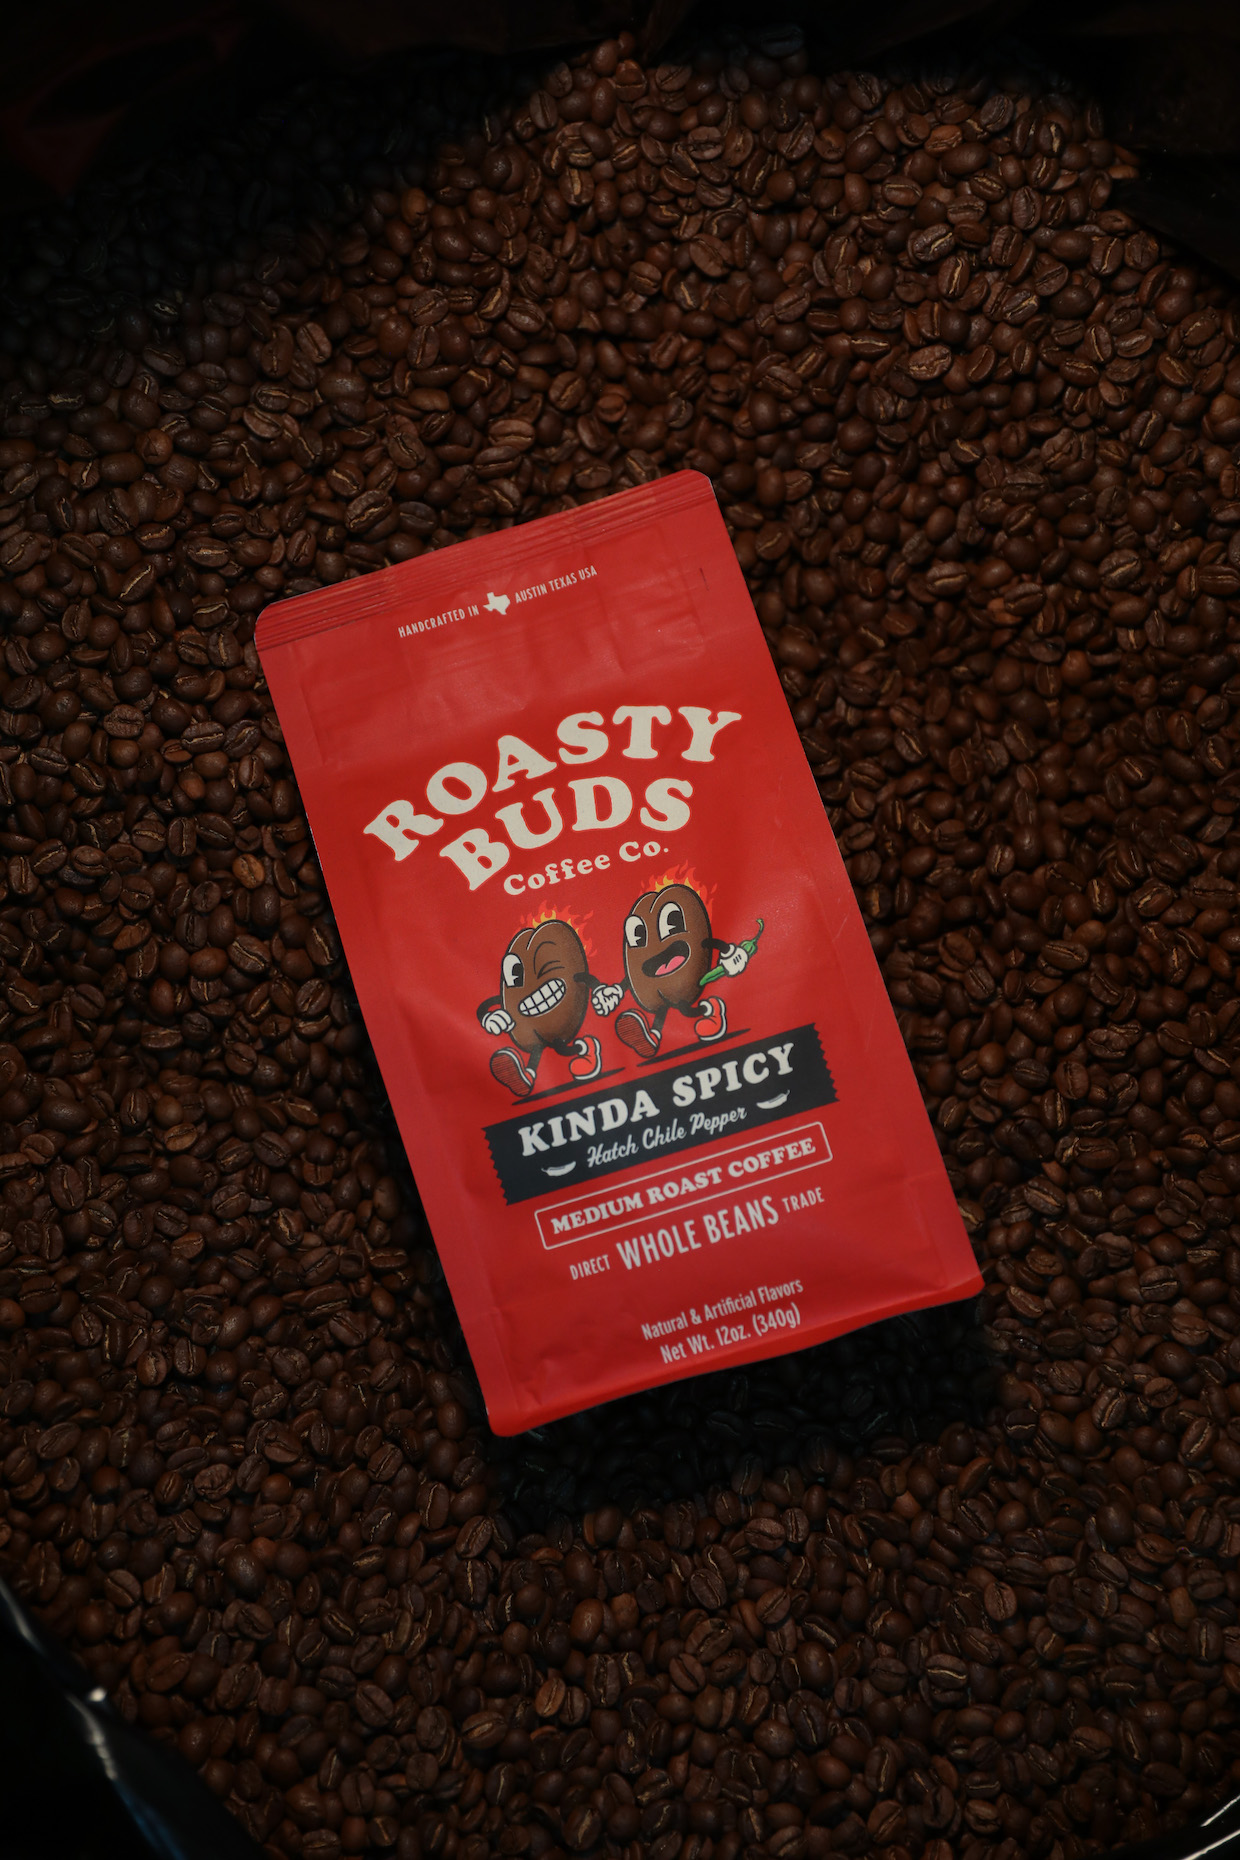 Roasty Buds coffee